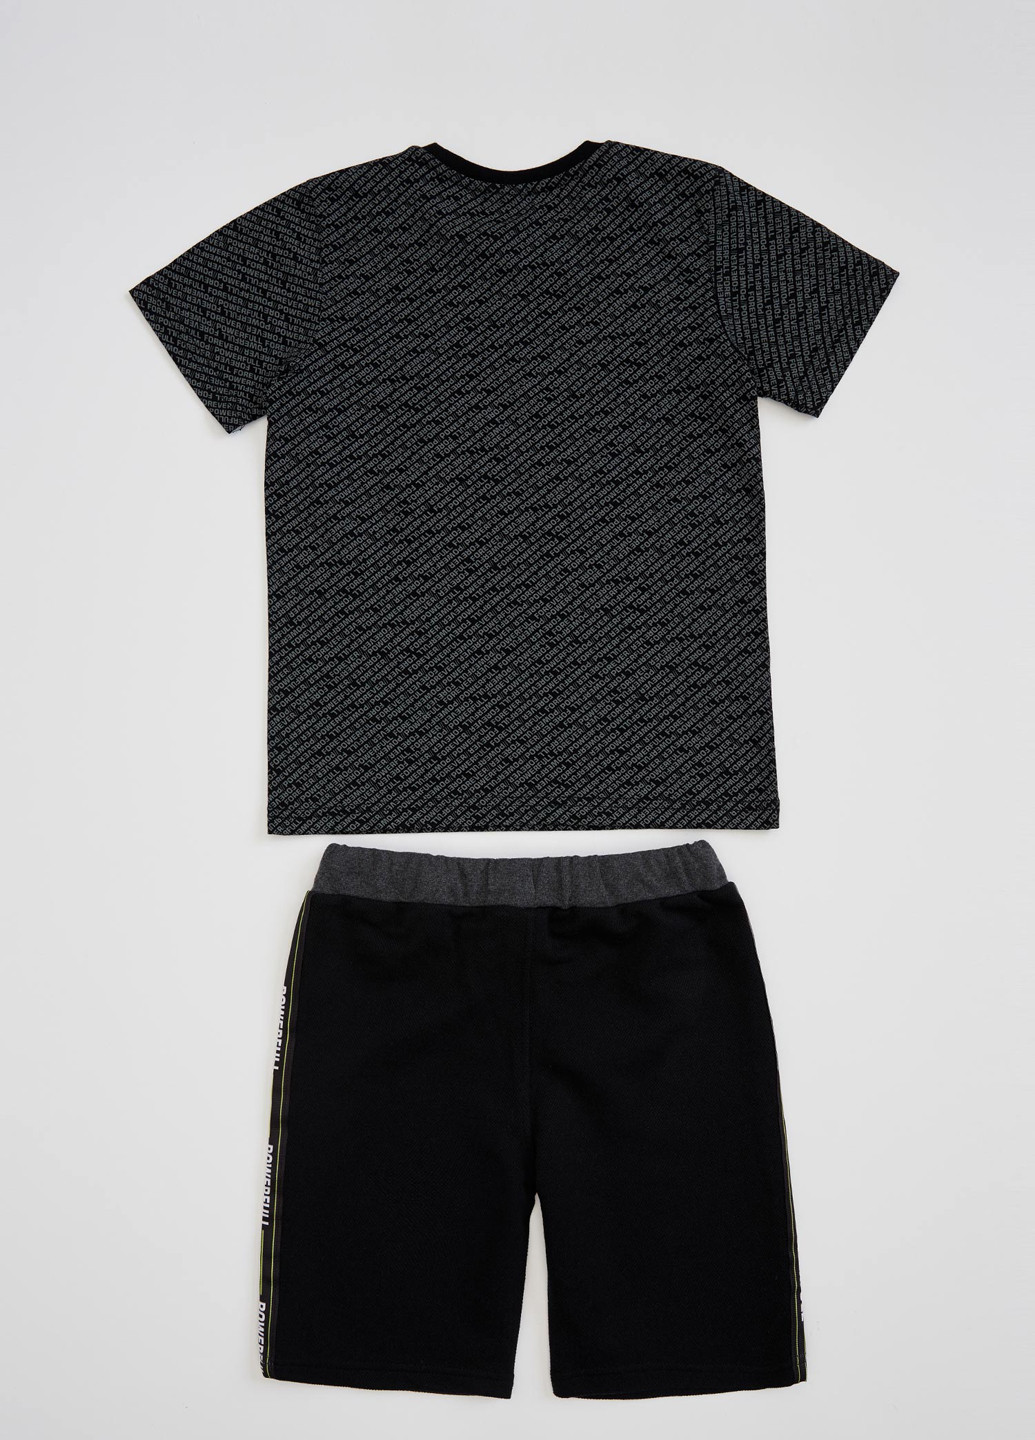 Черный летний комплект(футболка, шоты) DeFacto